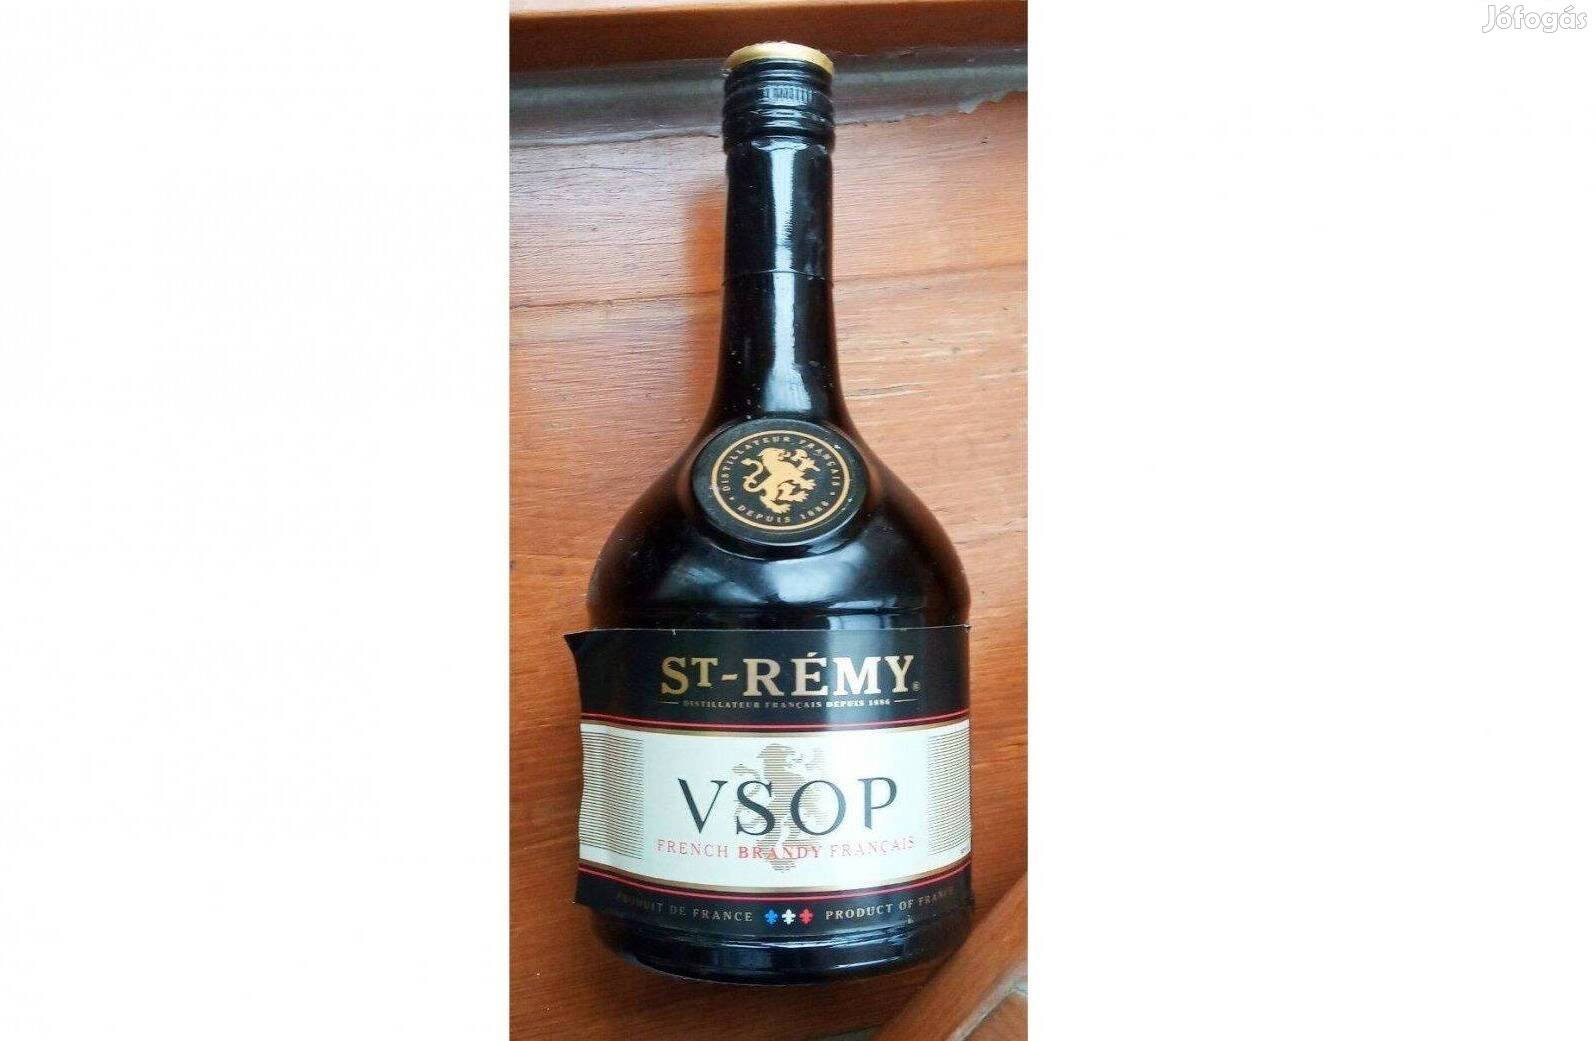 St. Rémy VSOP francia brandy díszüveg üres állapotban